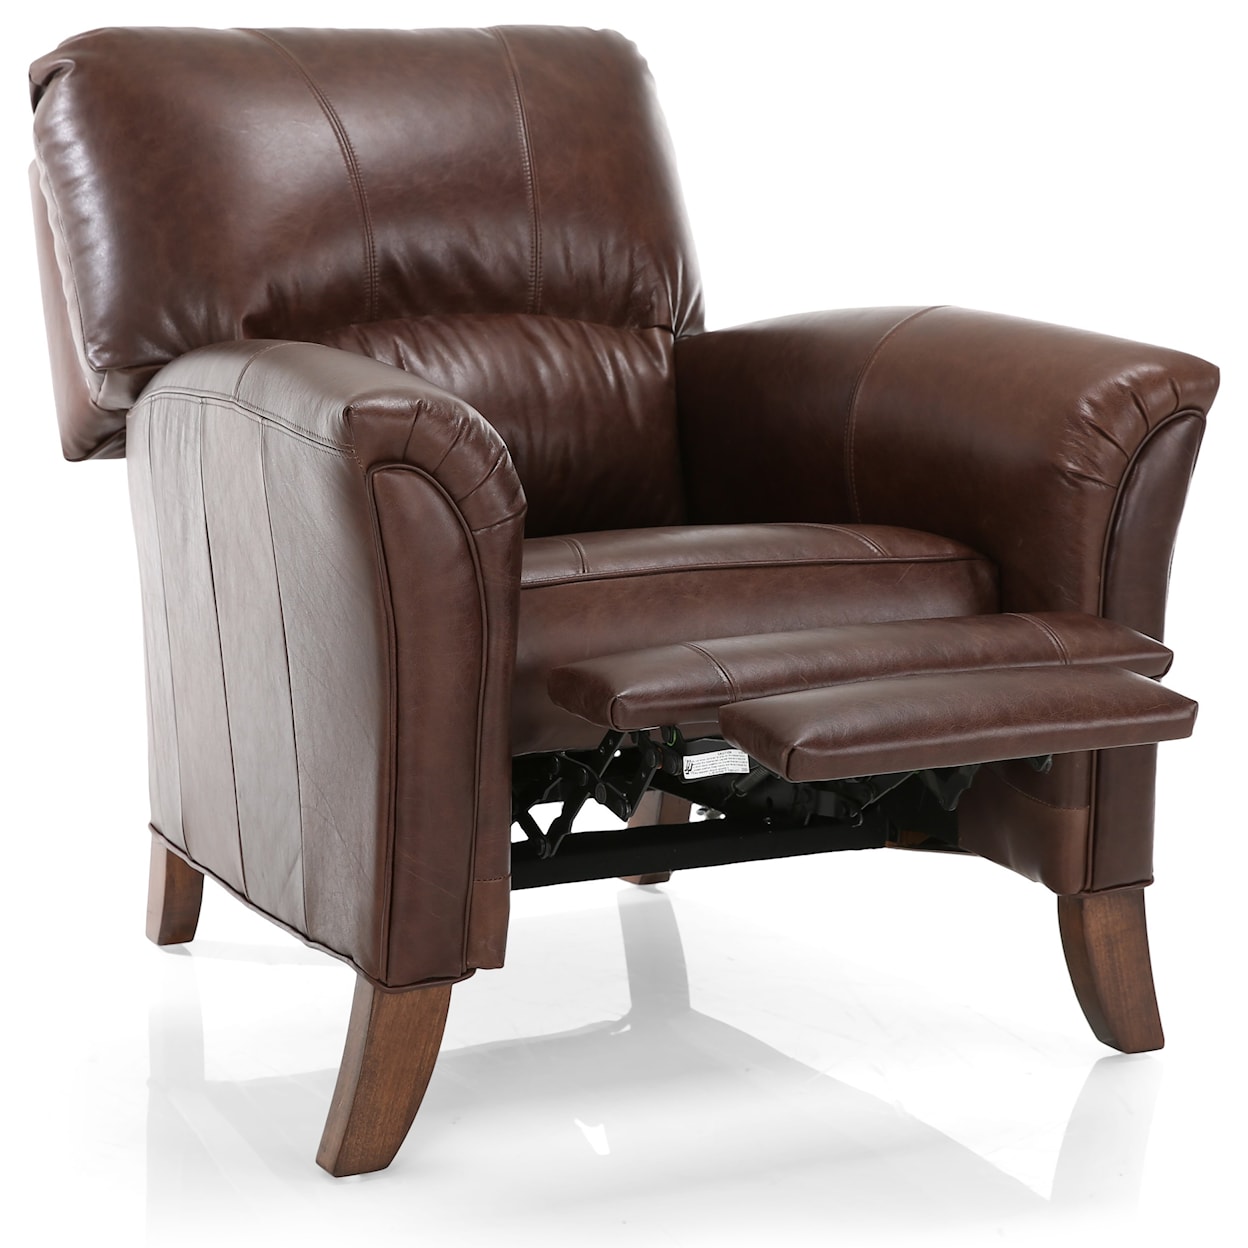 Decor-Rest 3450 Push Back Chair